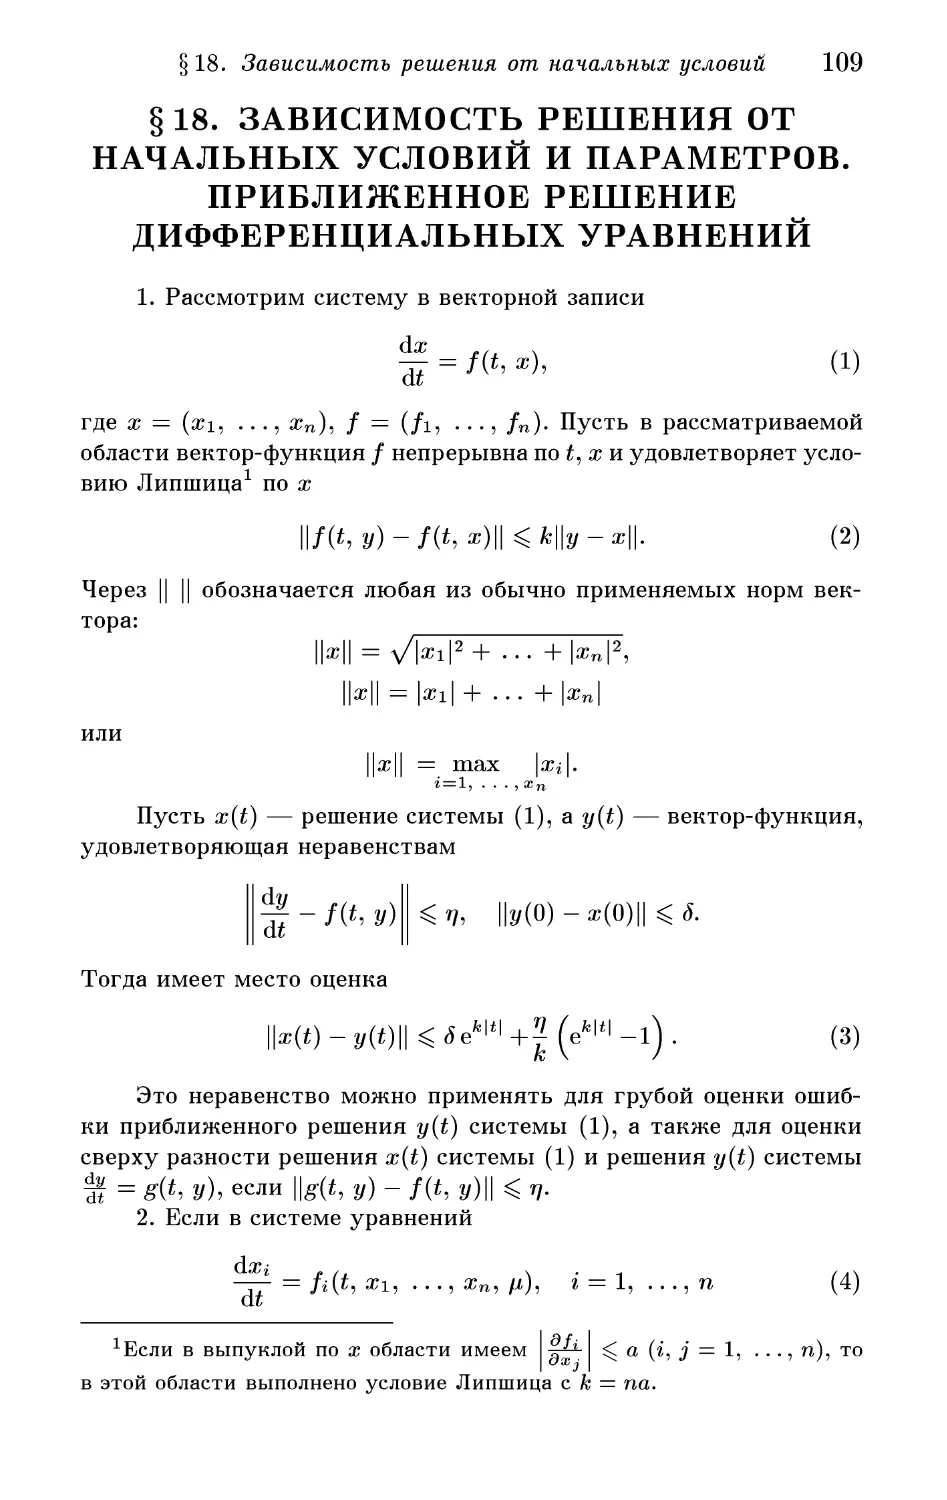 § 18. Зависимость решения от начальных условий и параметров. Приближенное решение дифференциальных уравнений